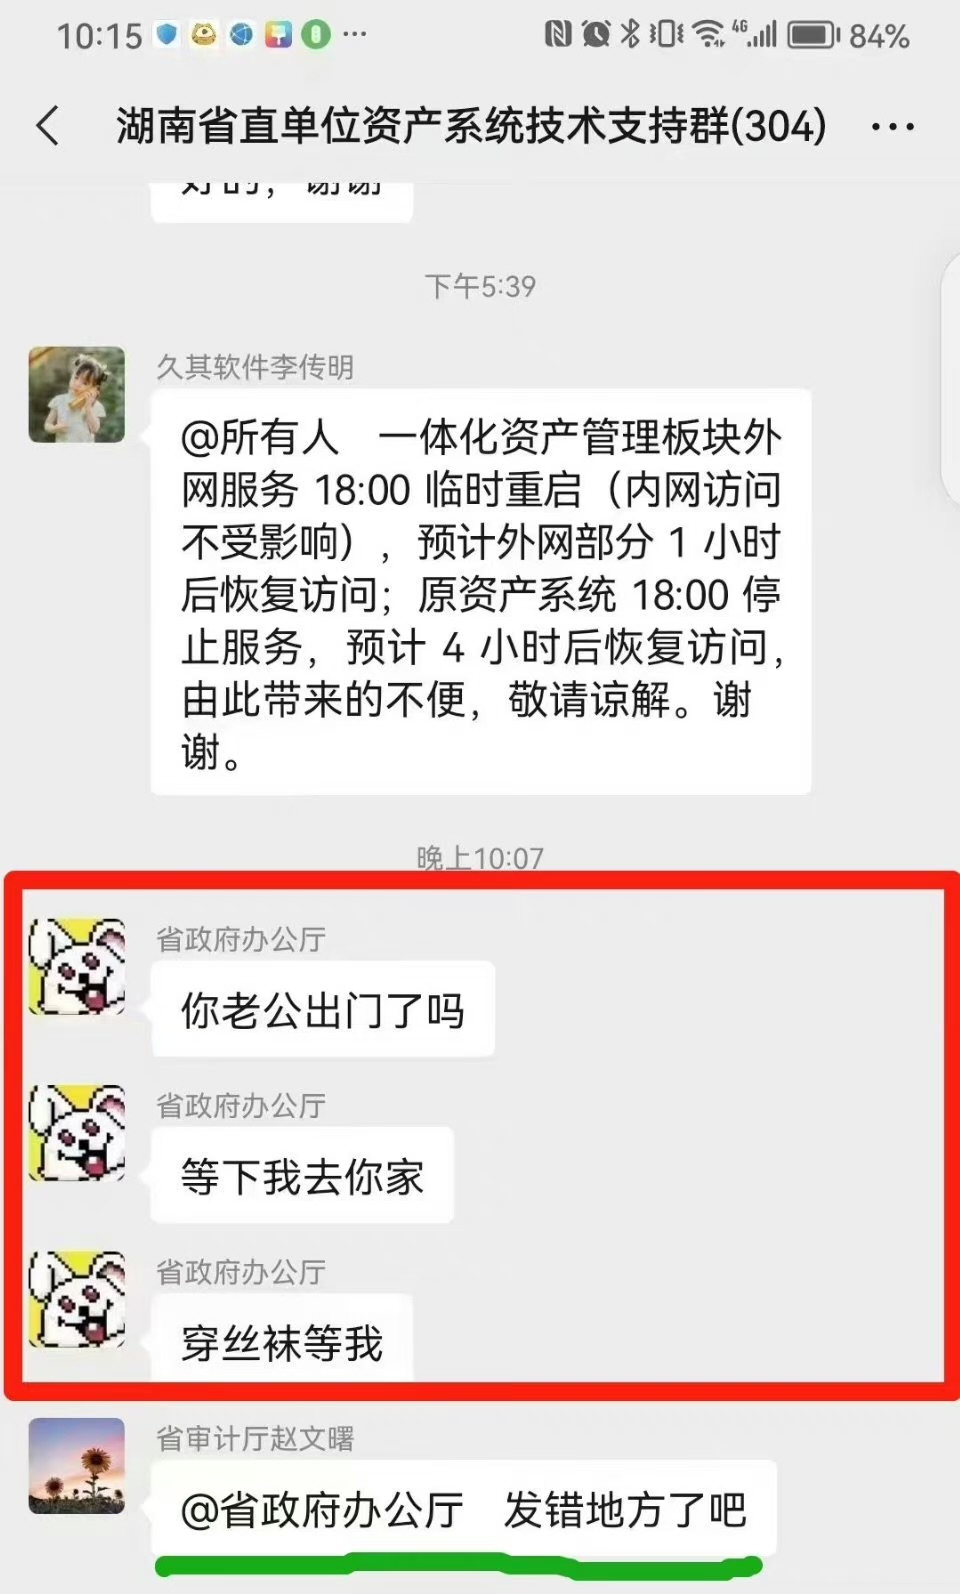 网传「省政府办公厅」传不雅讯息的群聊截图。